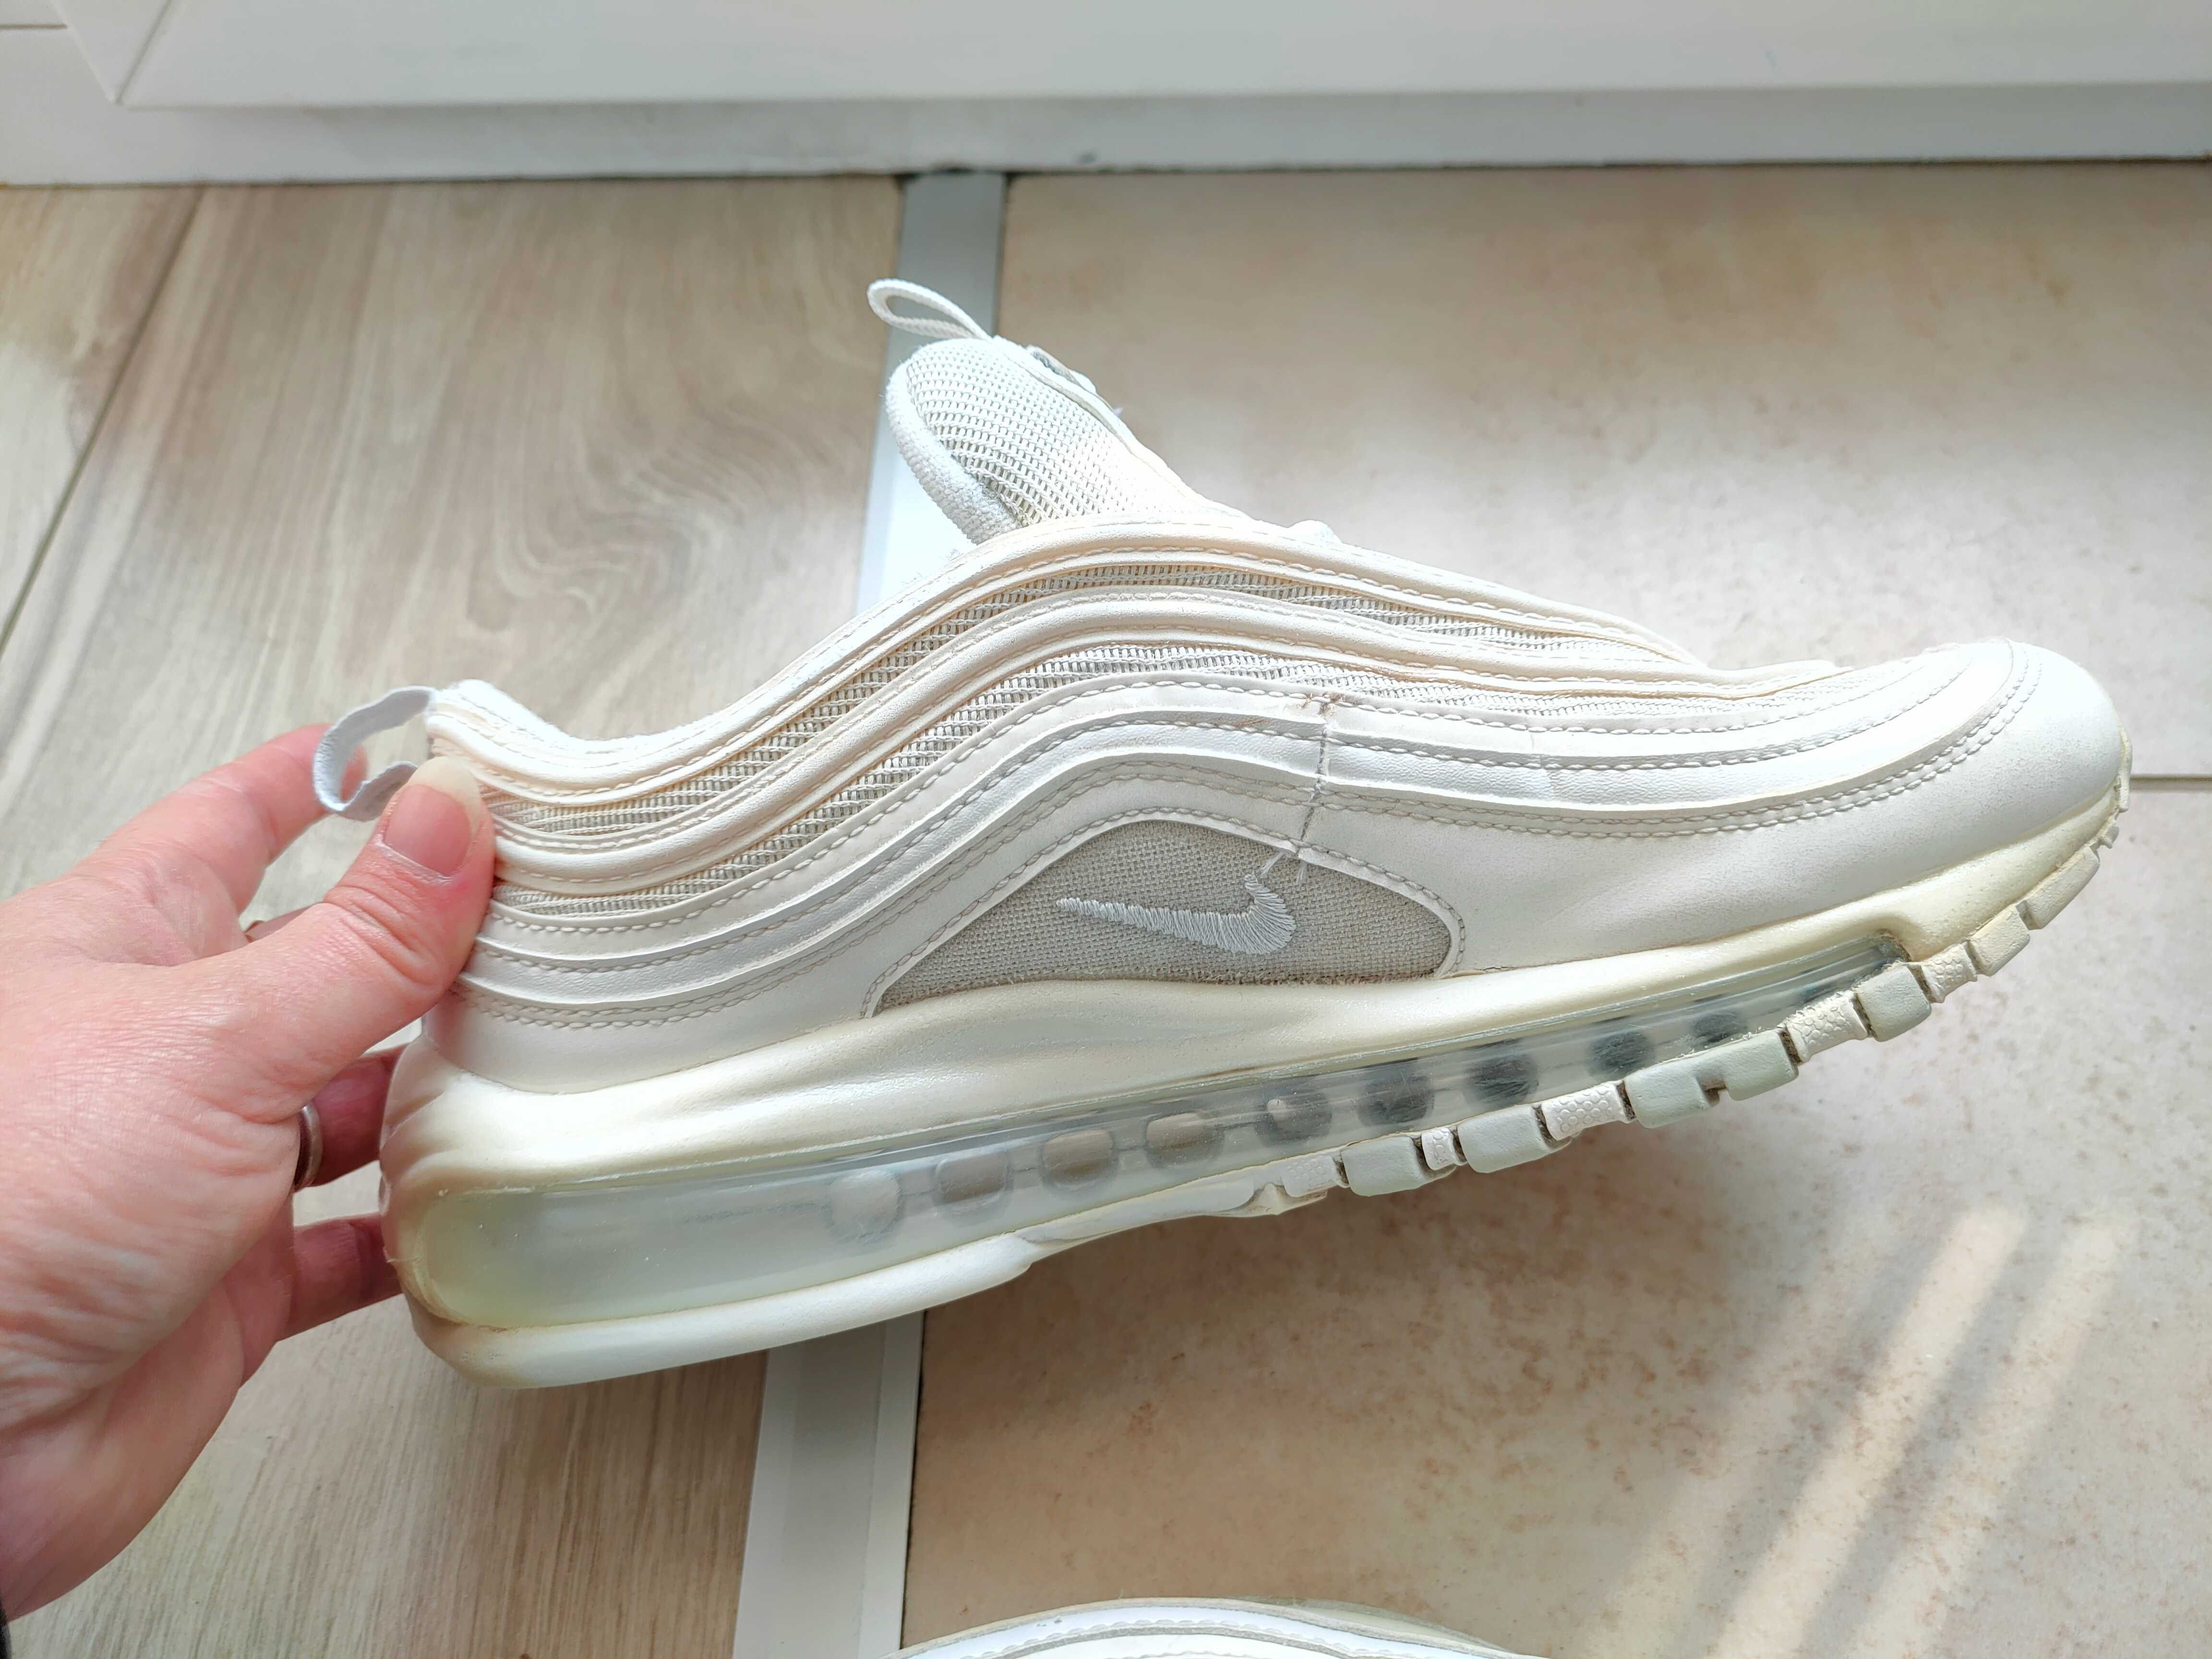 Damskie białe Nike 97